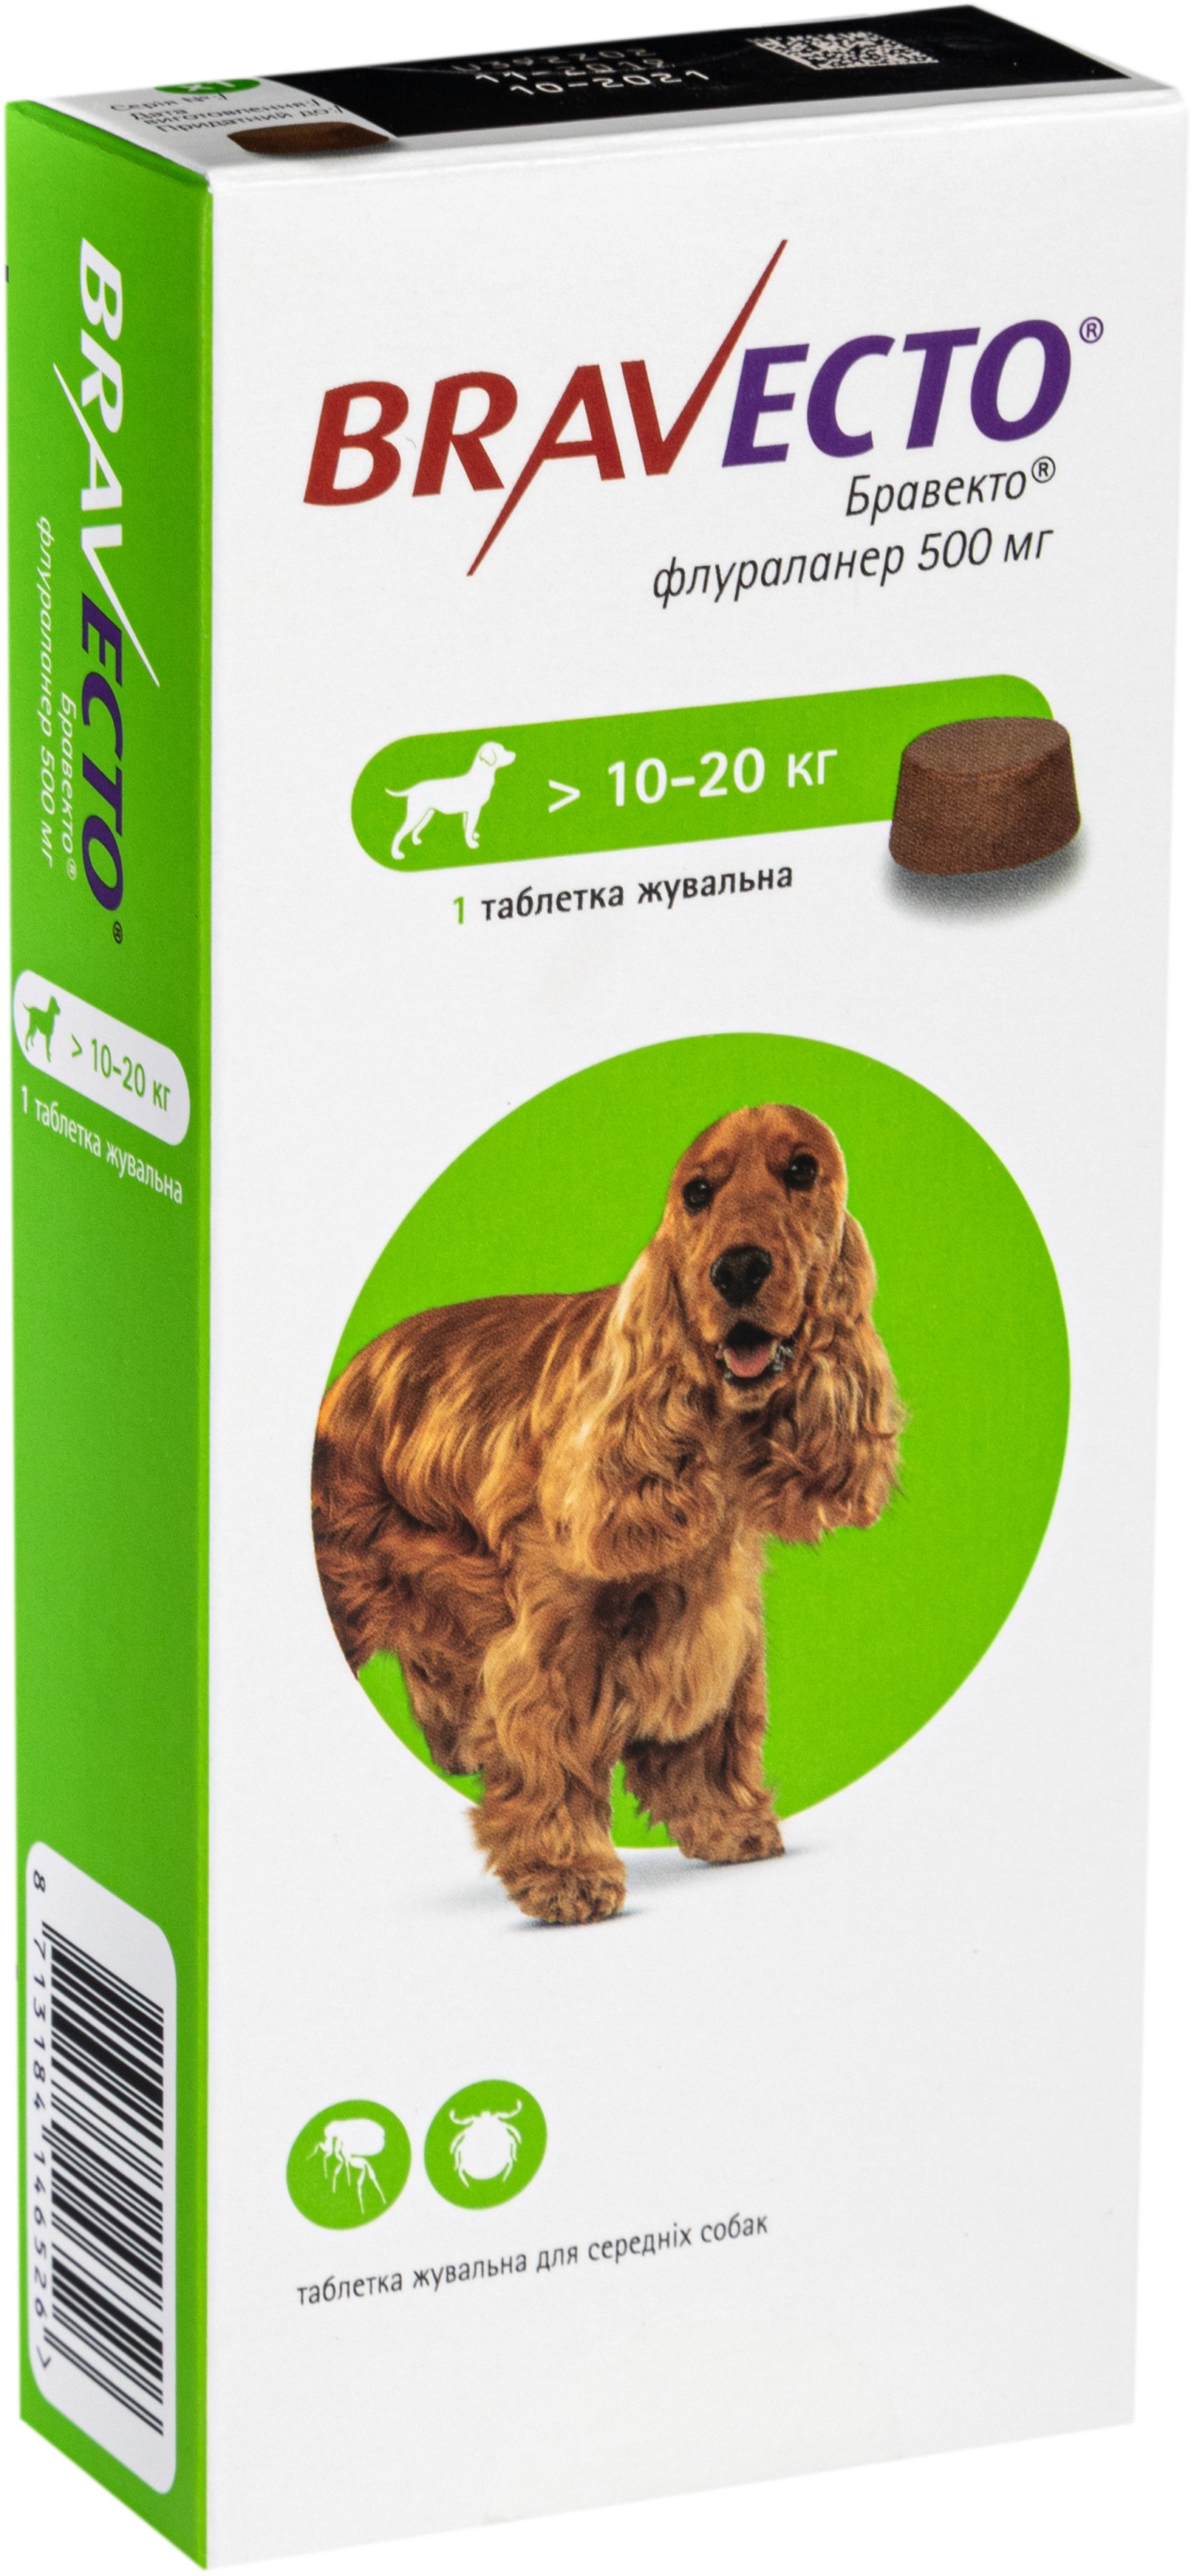 Жевательная таблетка Bravecto (Бравекто) от блох и клещей для собак 10 - 20 кг фото 3